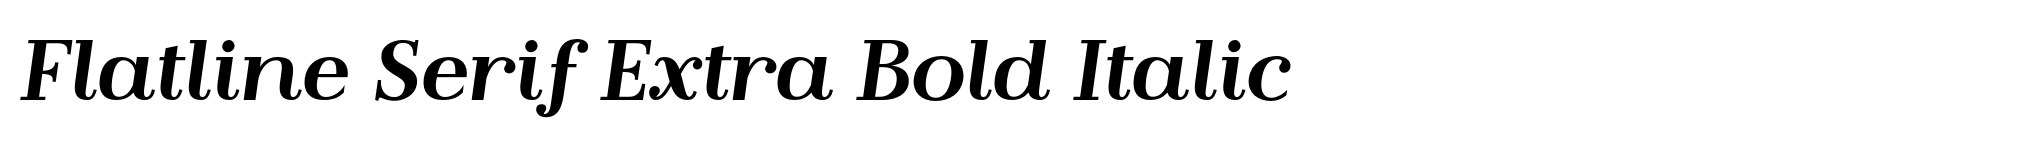 Flatline Serif Extra Bold Italic image